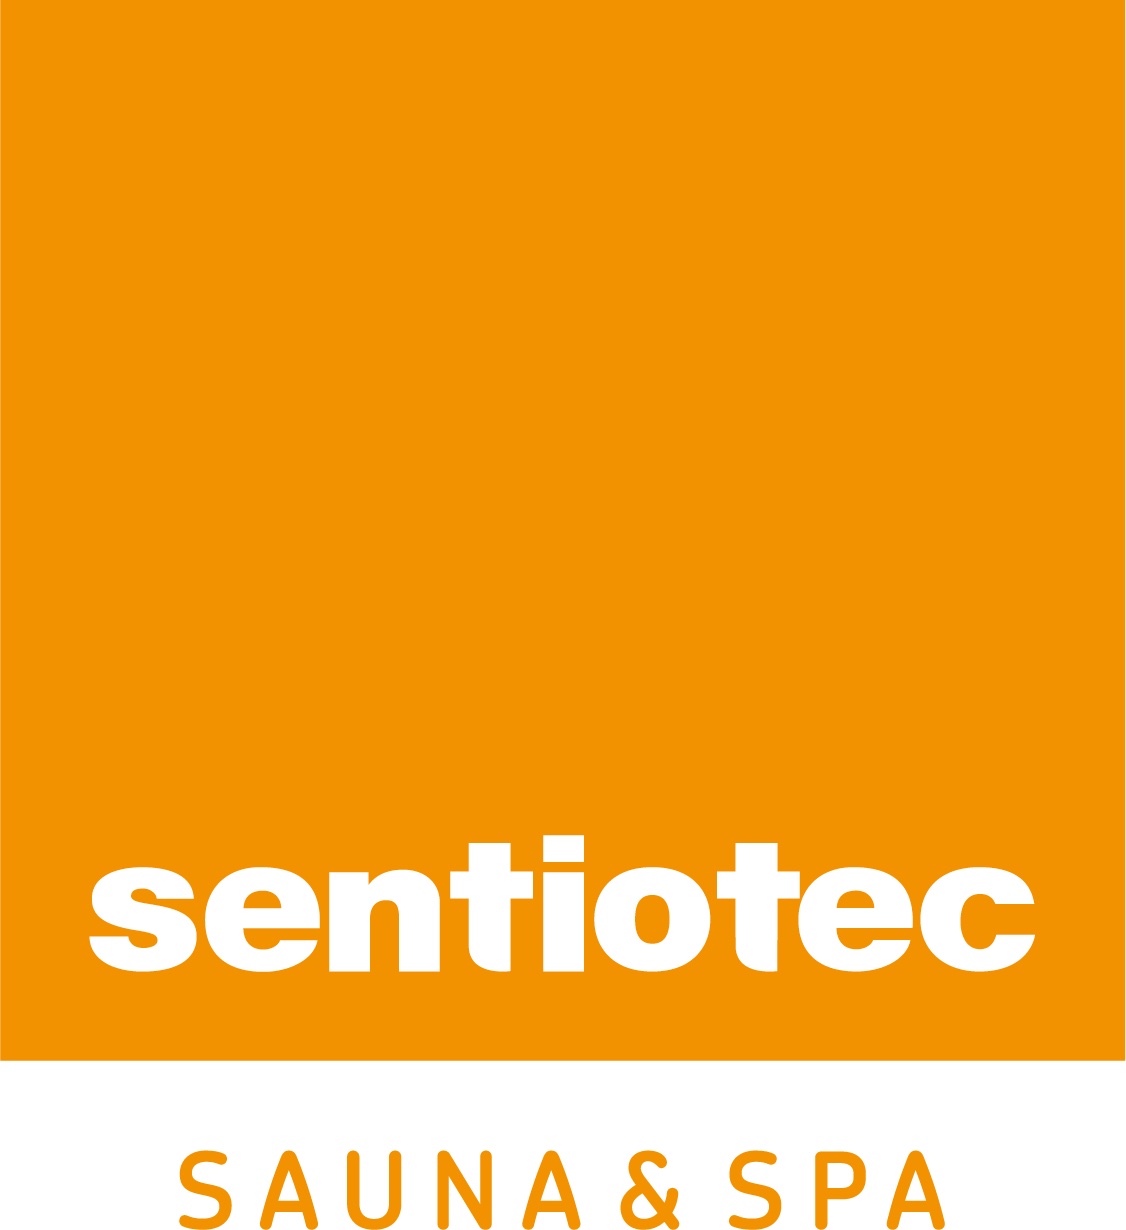 Sentiotec